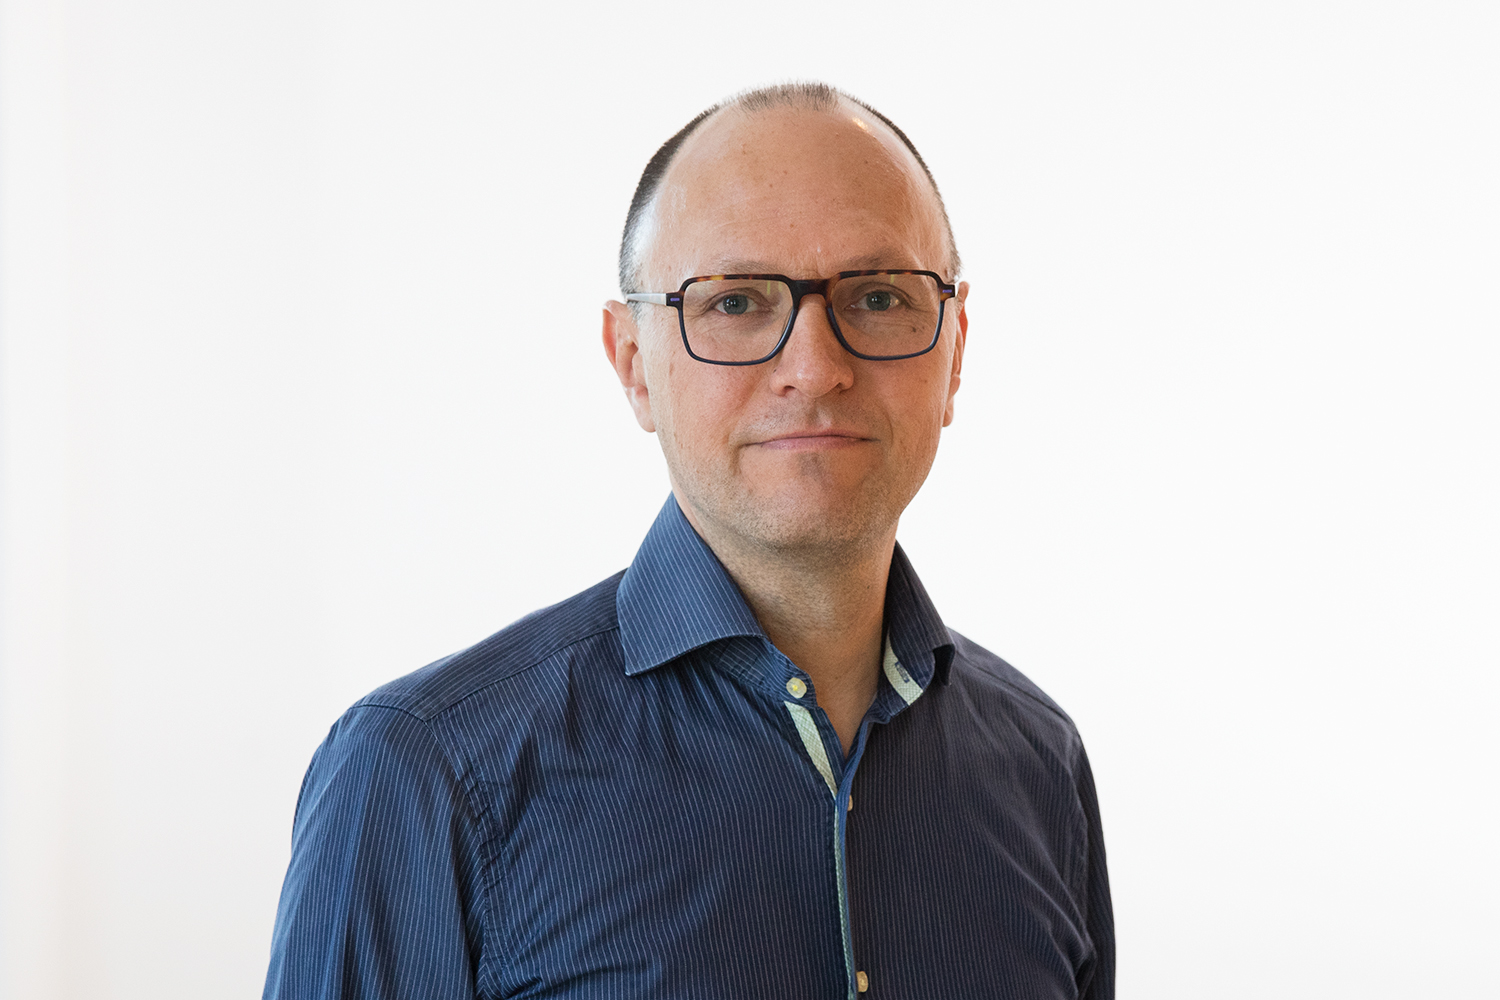 Daniel R. Witte, Professor, Steno Diabetes Center Aarhus